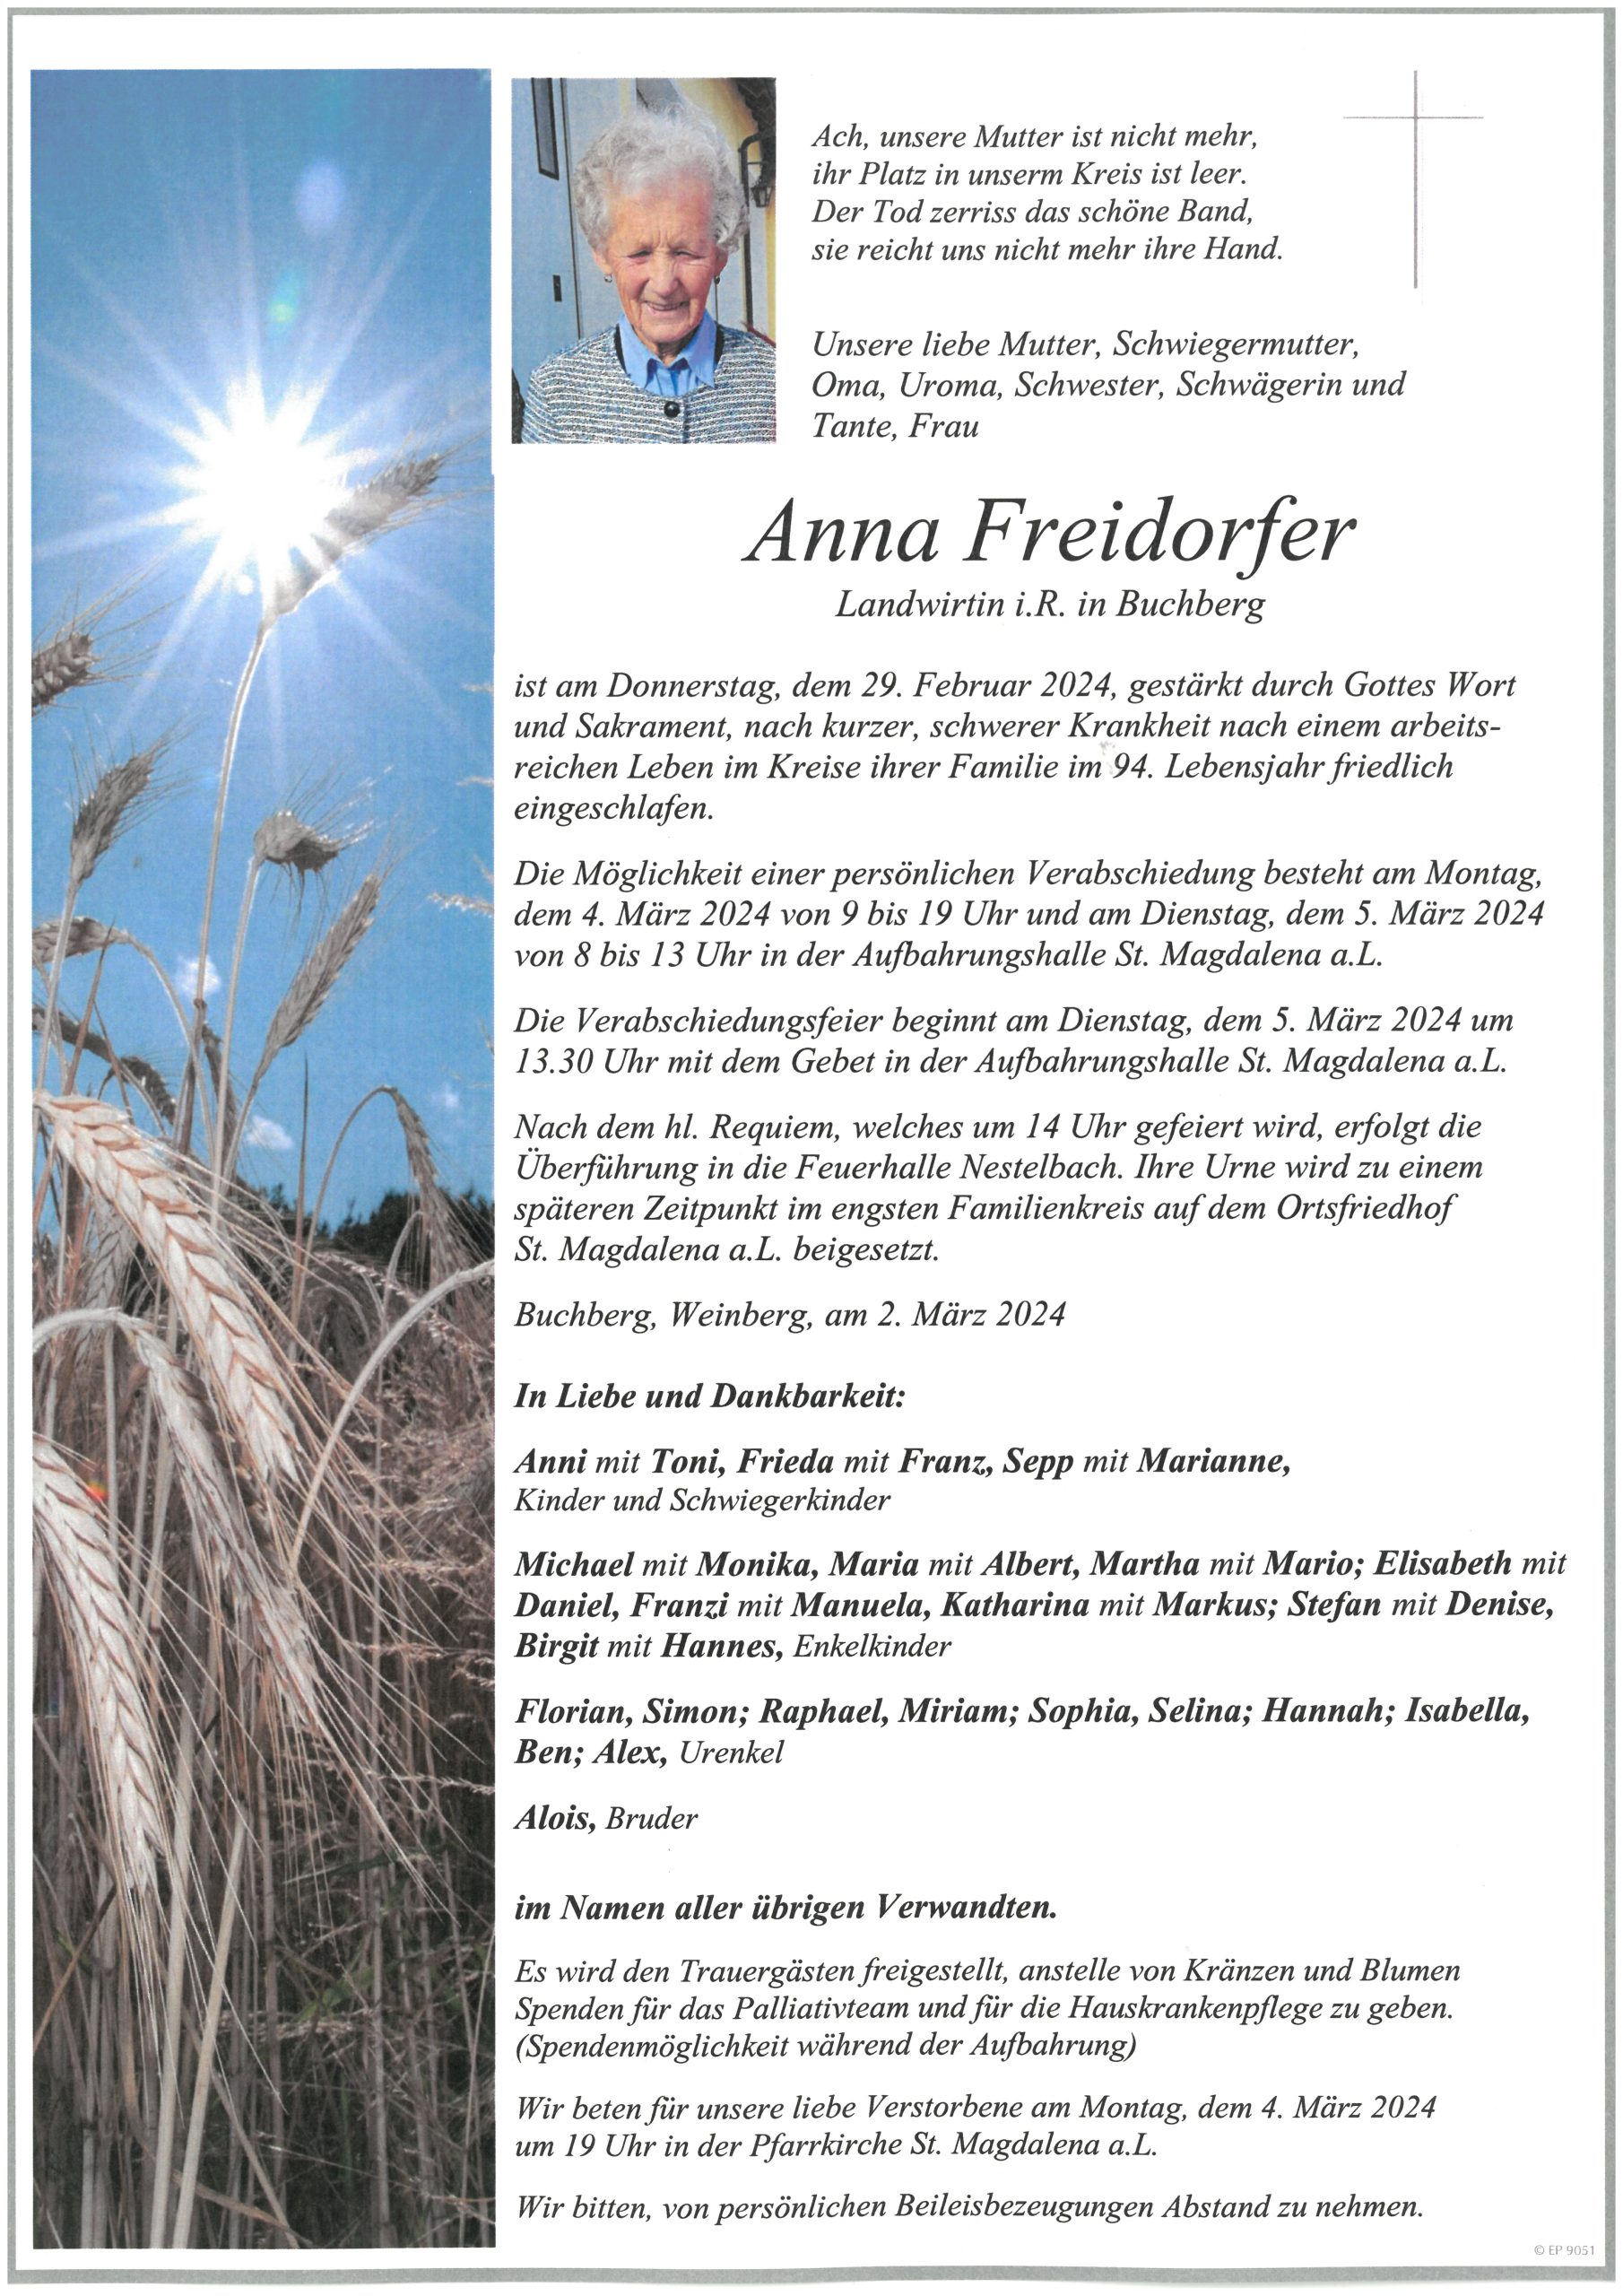 Anna Freidorfer, Buchberg